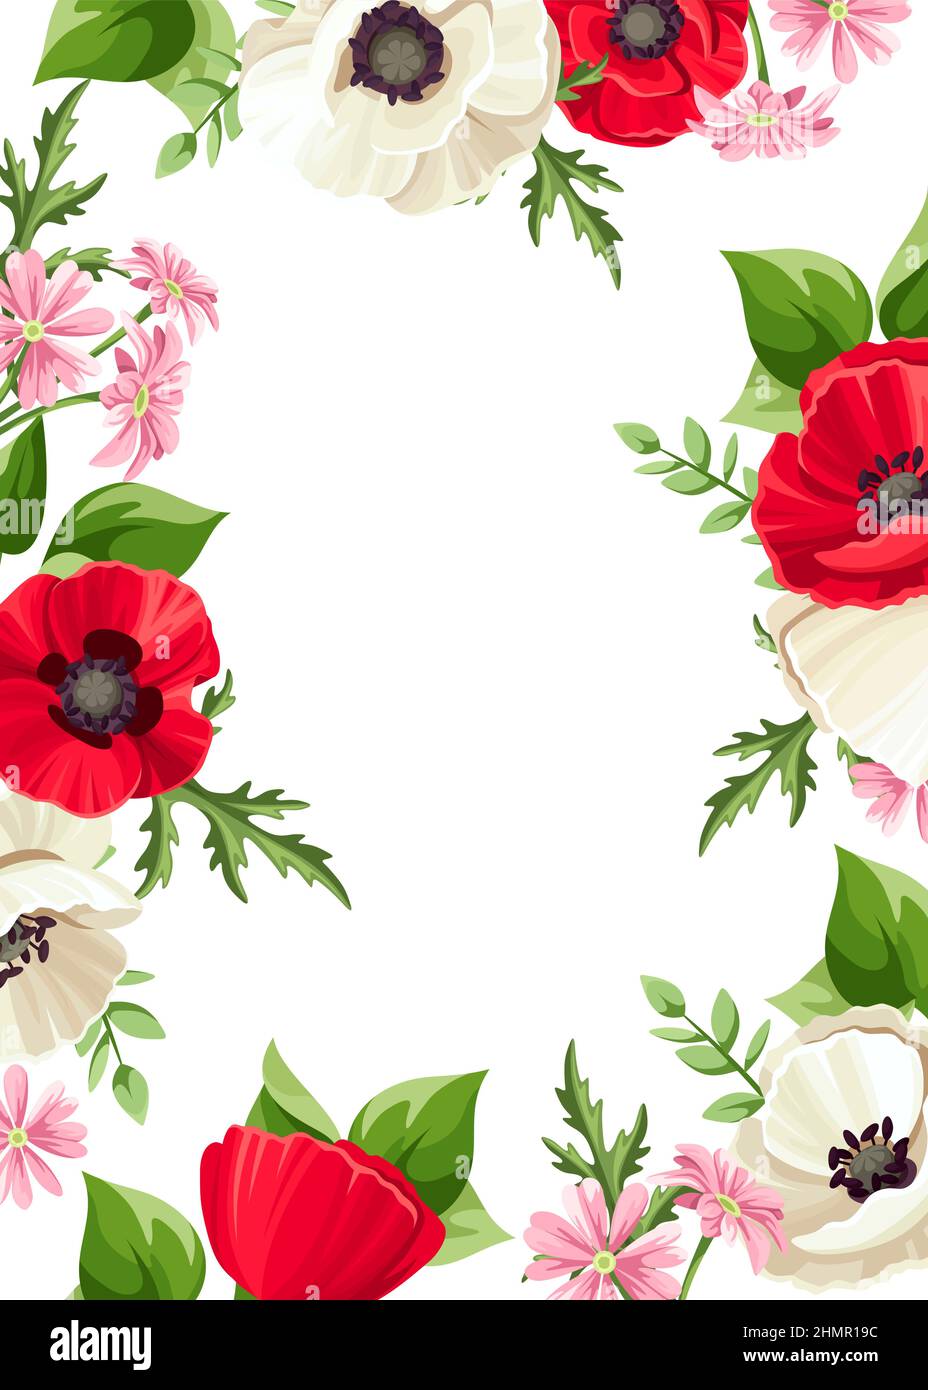 Tarjeta vectorial con flores de amapola roja y blanca, pequeñas flores rosadas y hojas verdes. Diseño de tarjeta de felicitación o invitación Ilustración del Vector